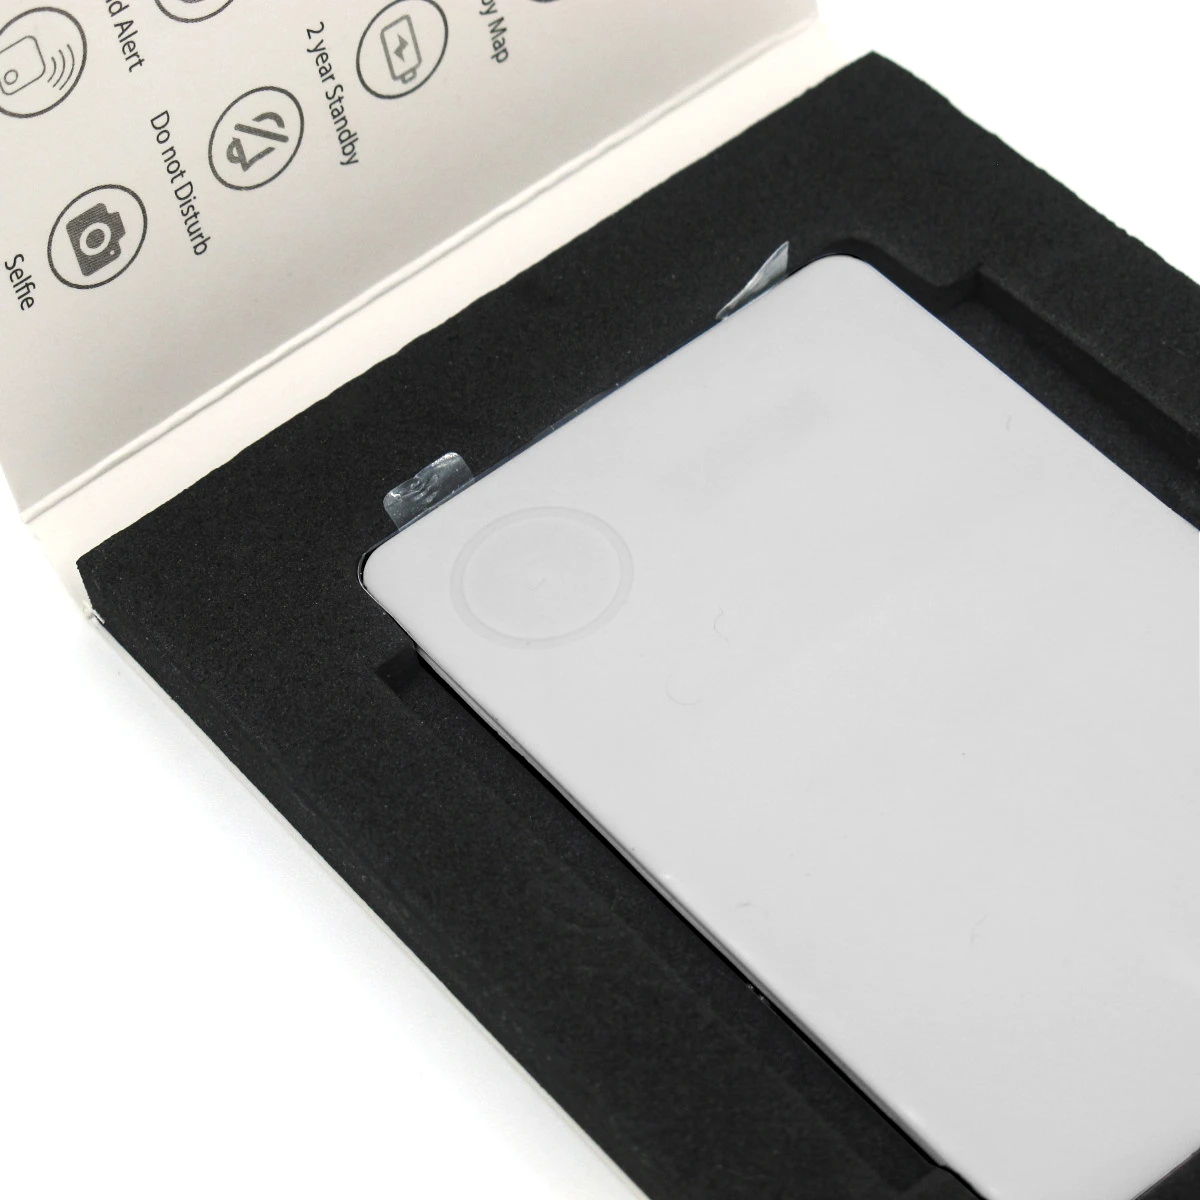 itrack slim wallet used smart finder tracker 98dB alarm sound anti-lost key finder tile waterproof wallet smart tracker finder